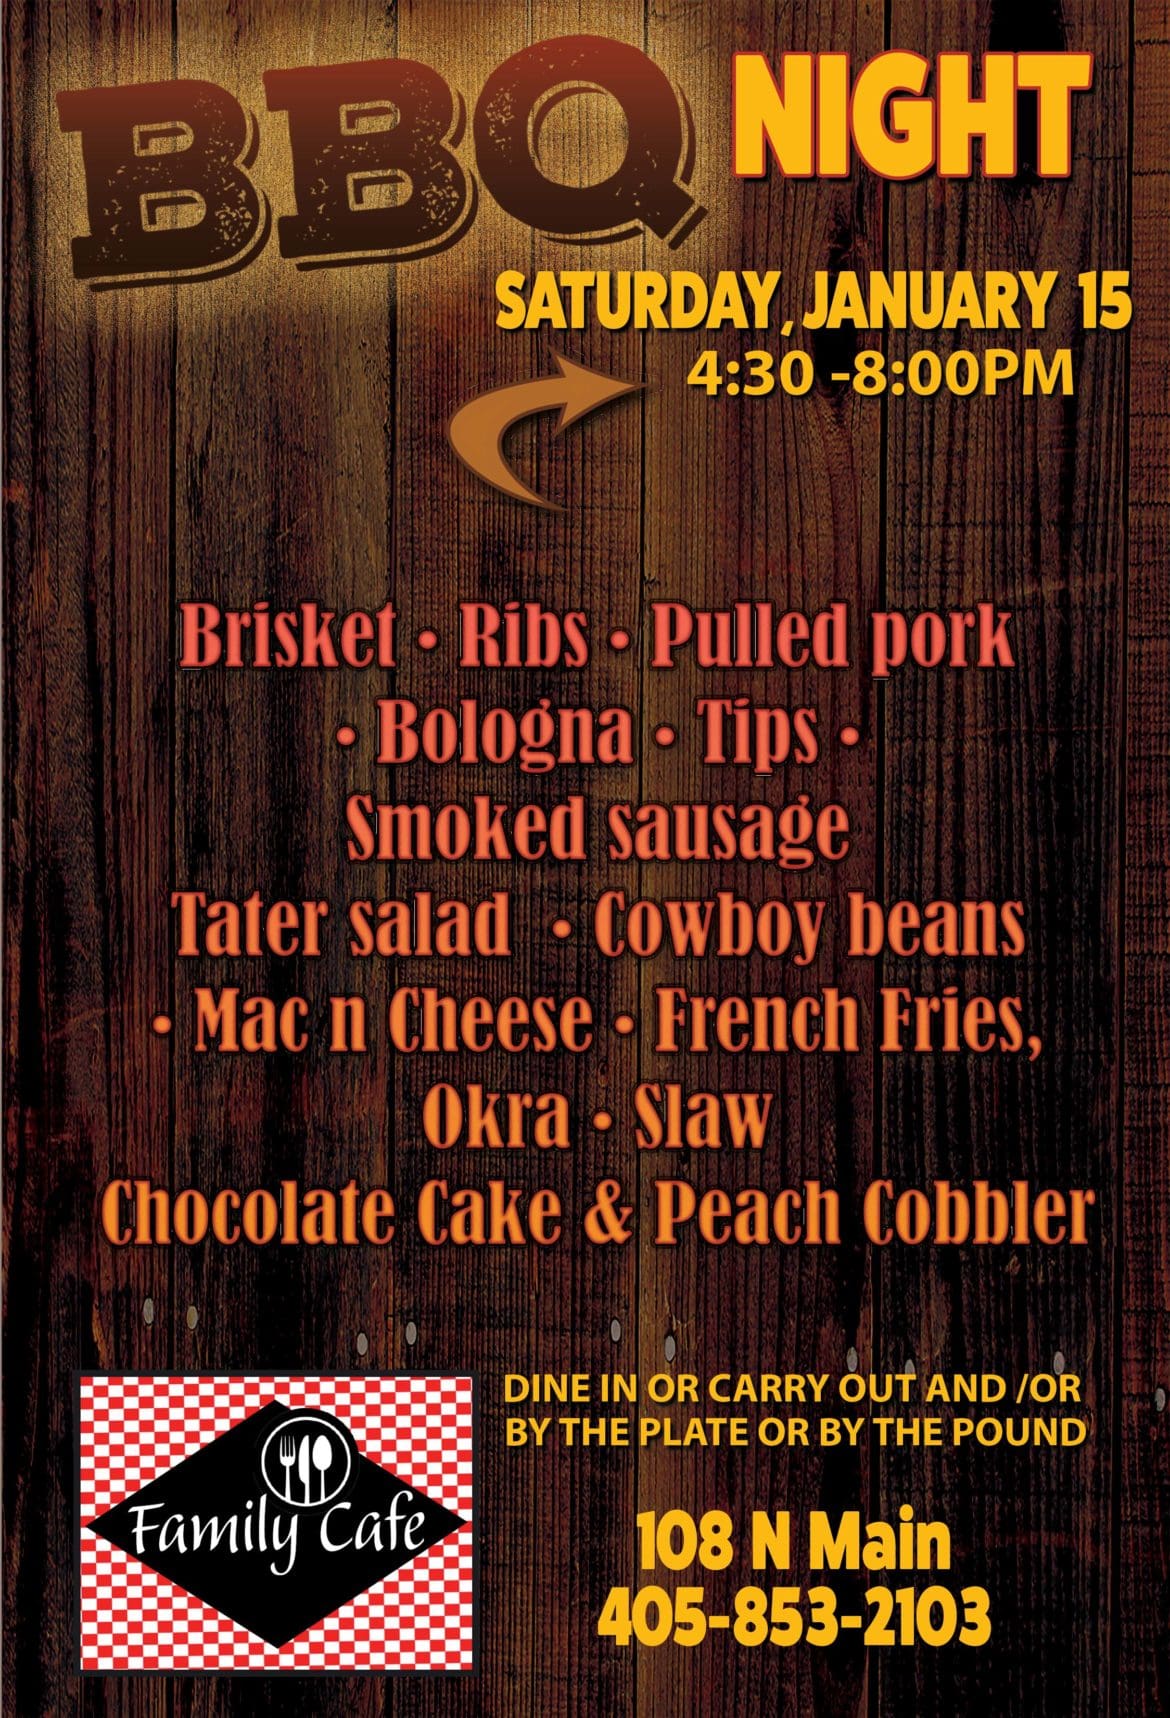 BBQ NIGHT FAMILY CAFE SATURDAY, JANUARY 15